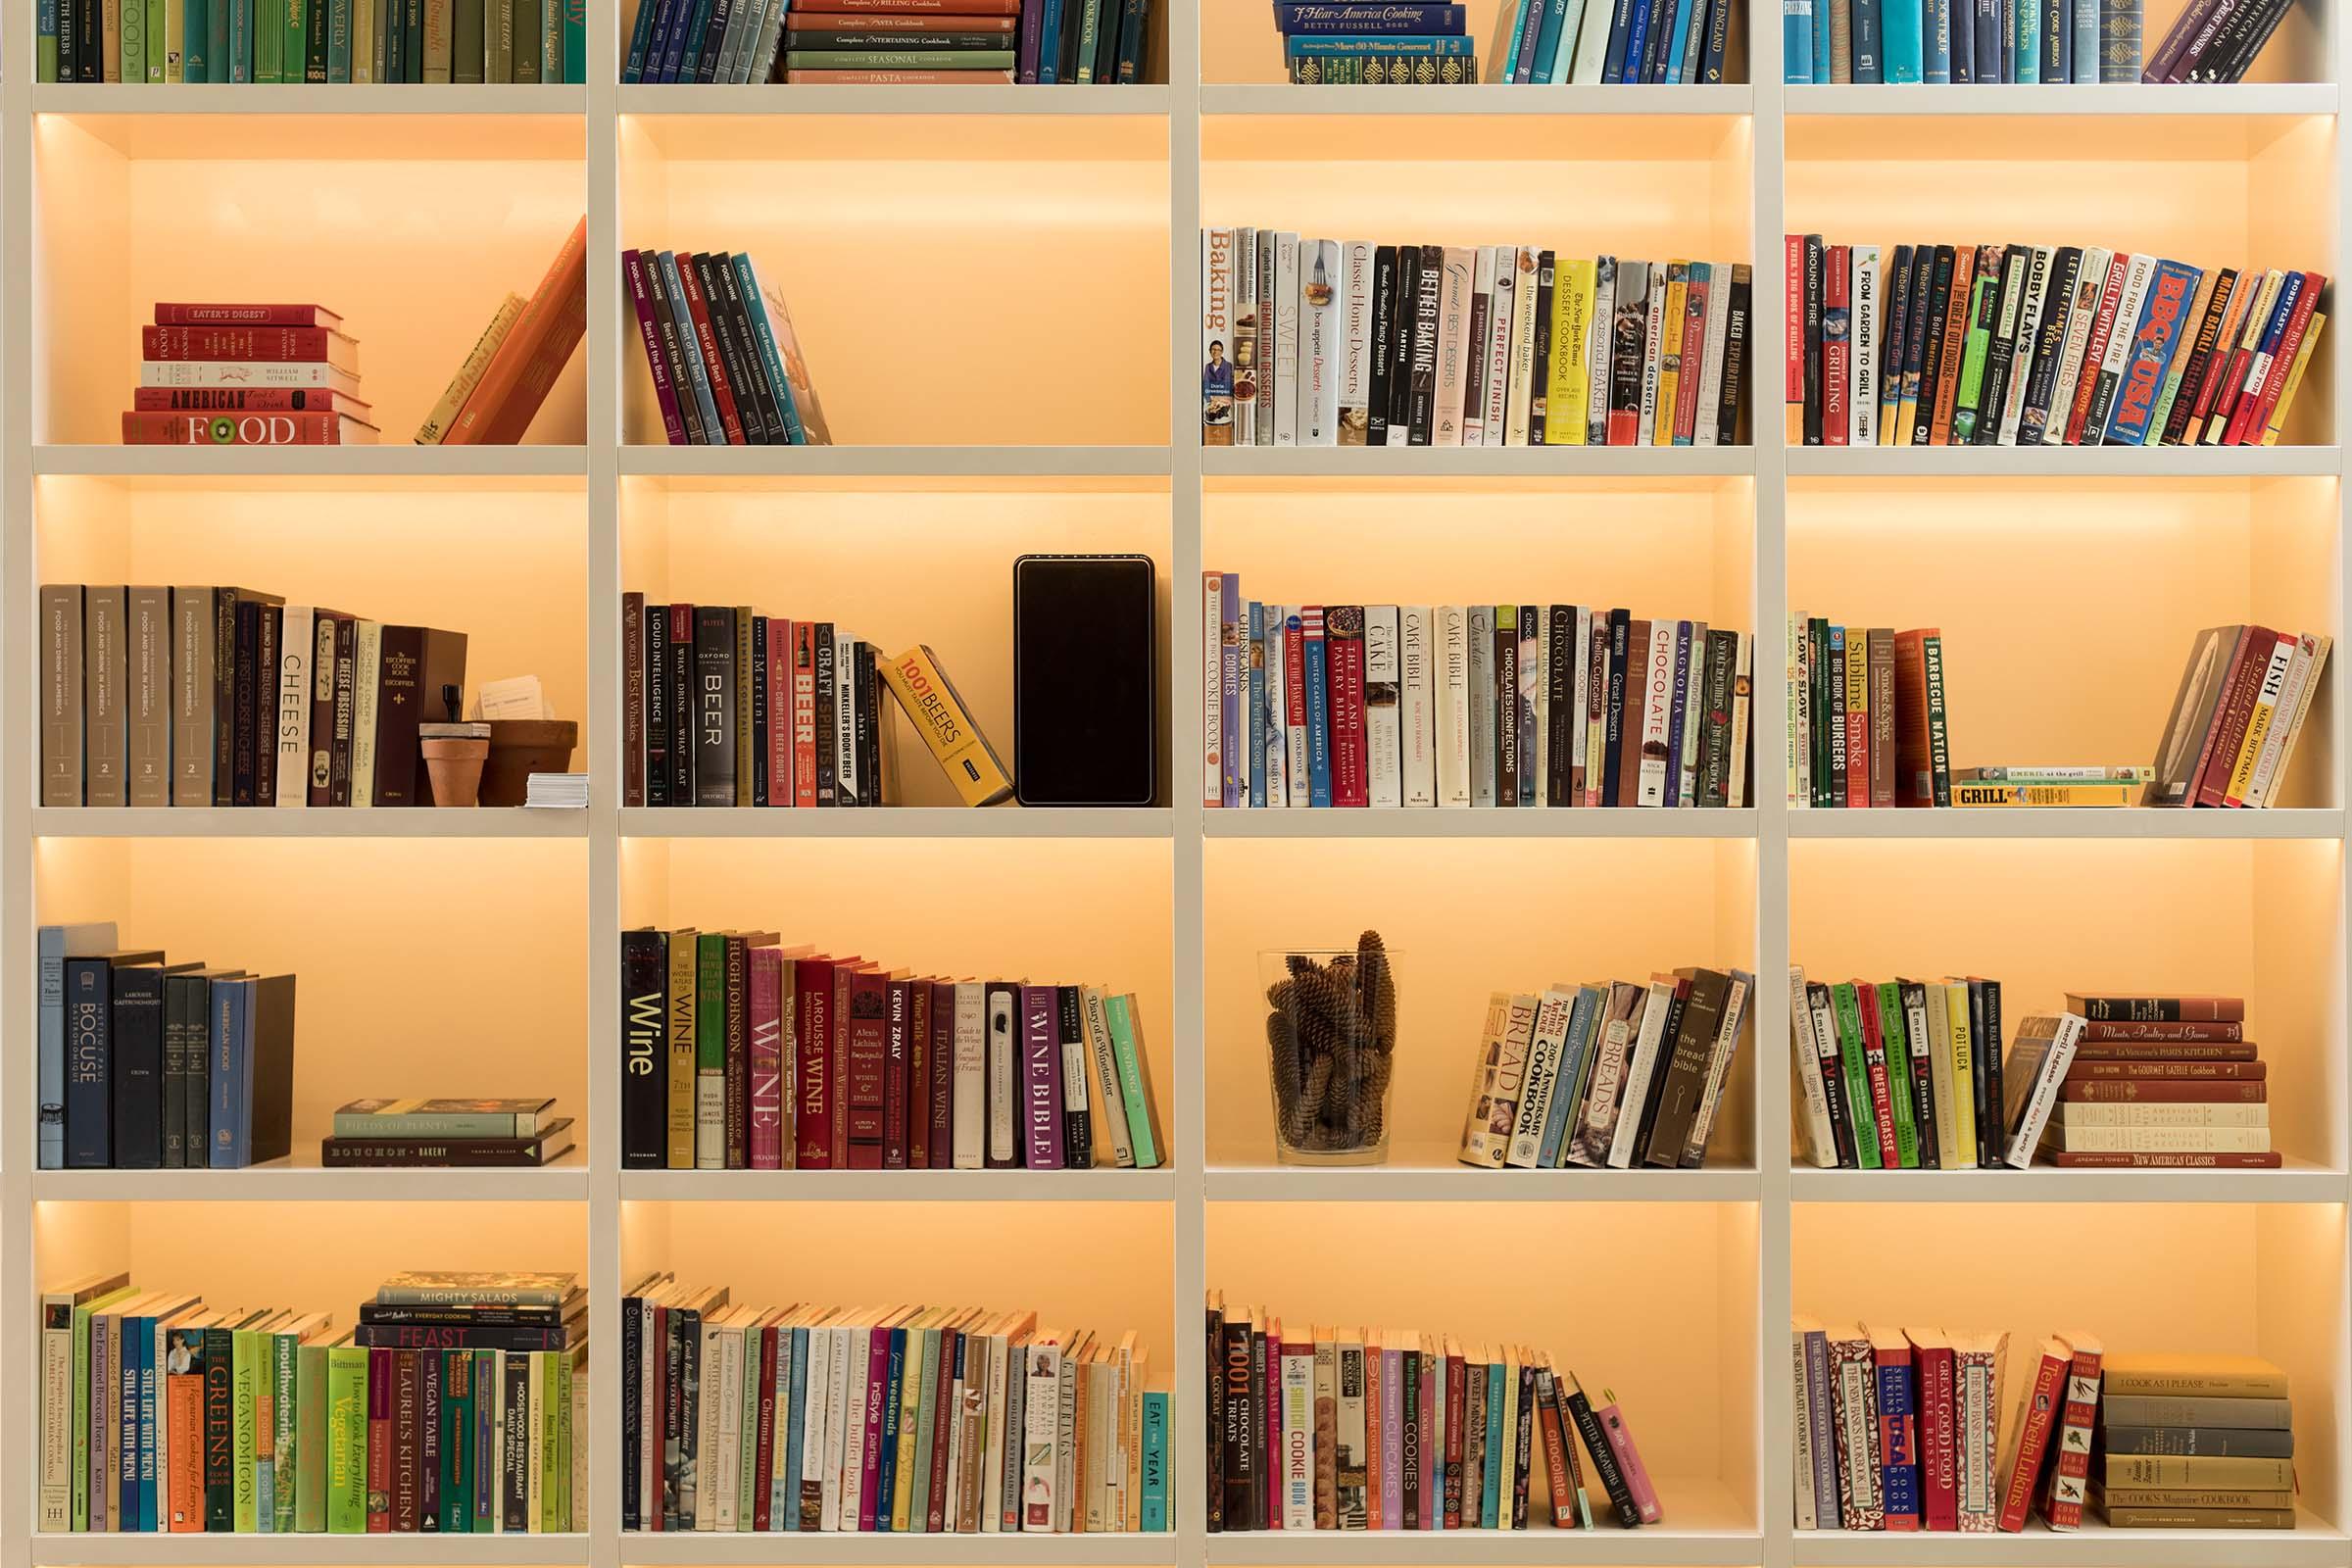 a close up of a book shelf